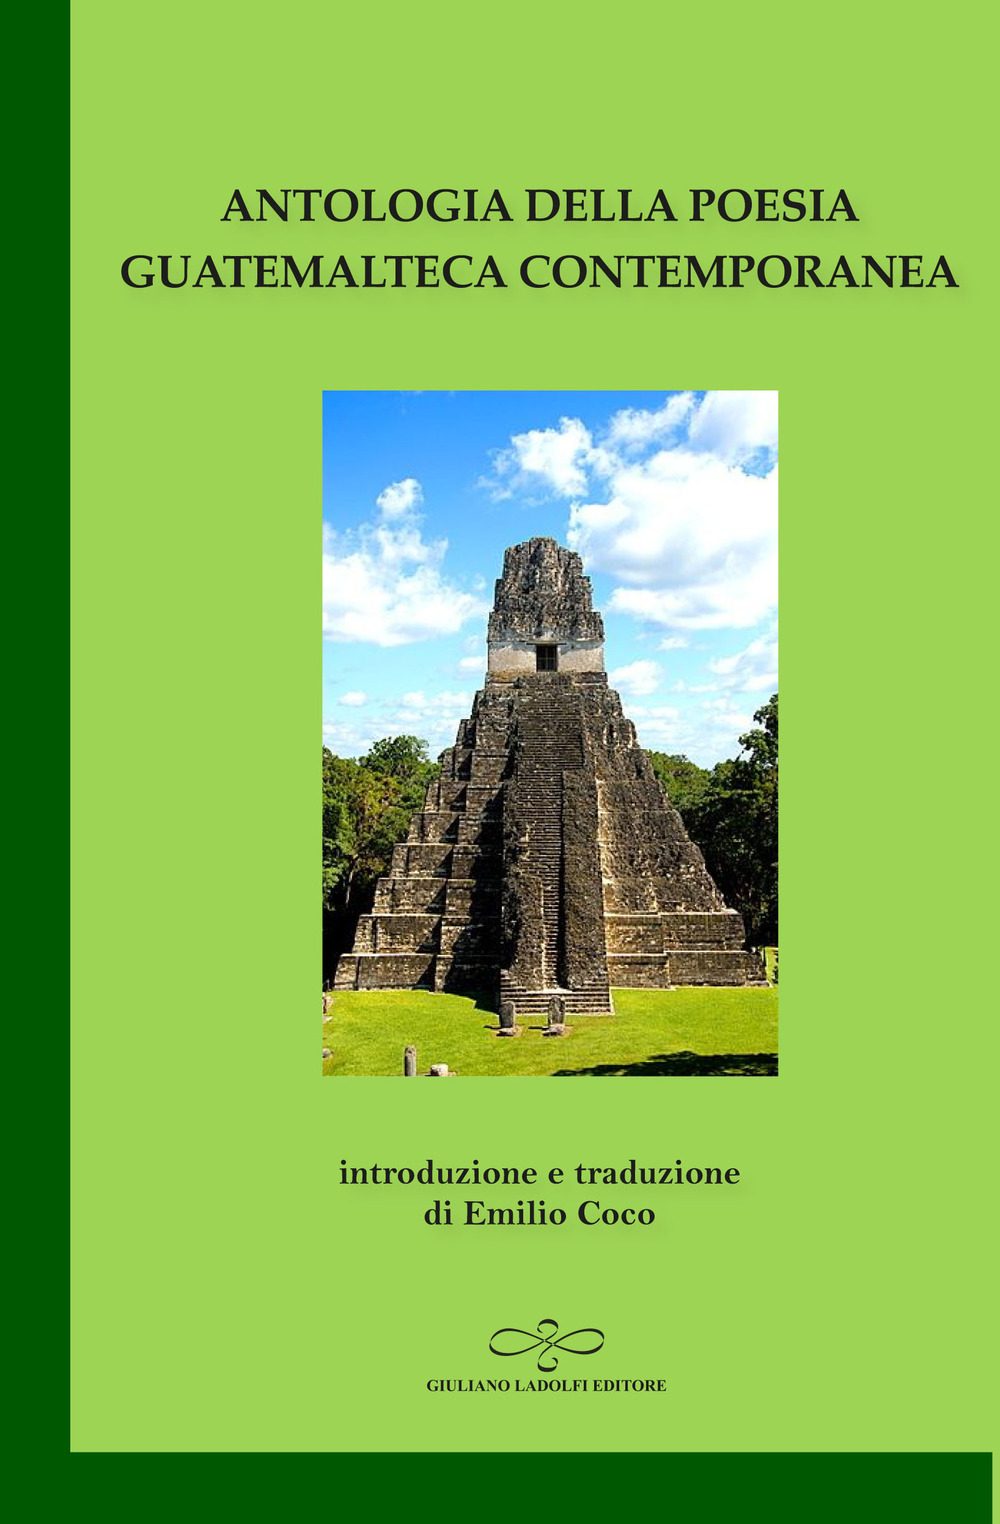 Image of Antologia della poesia guatemalteca contemporanea